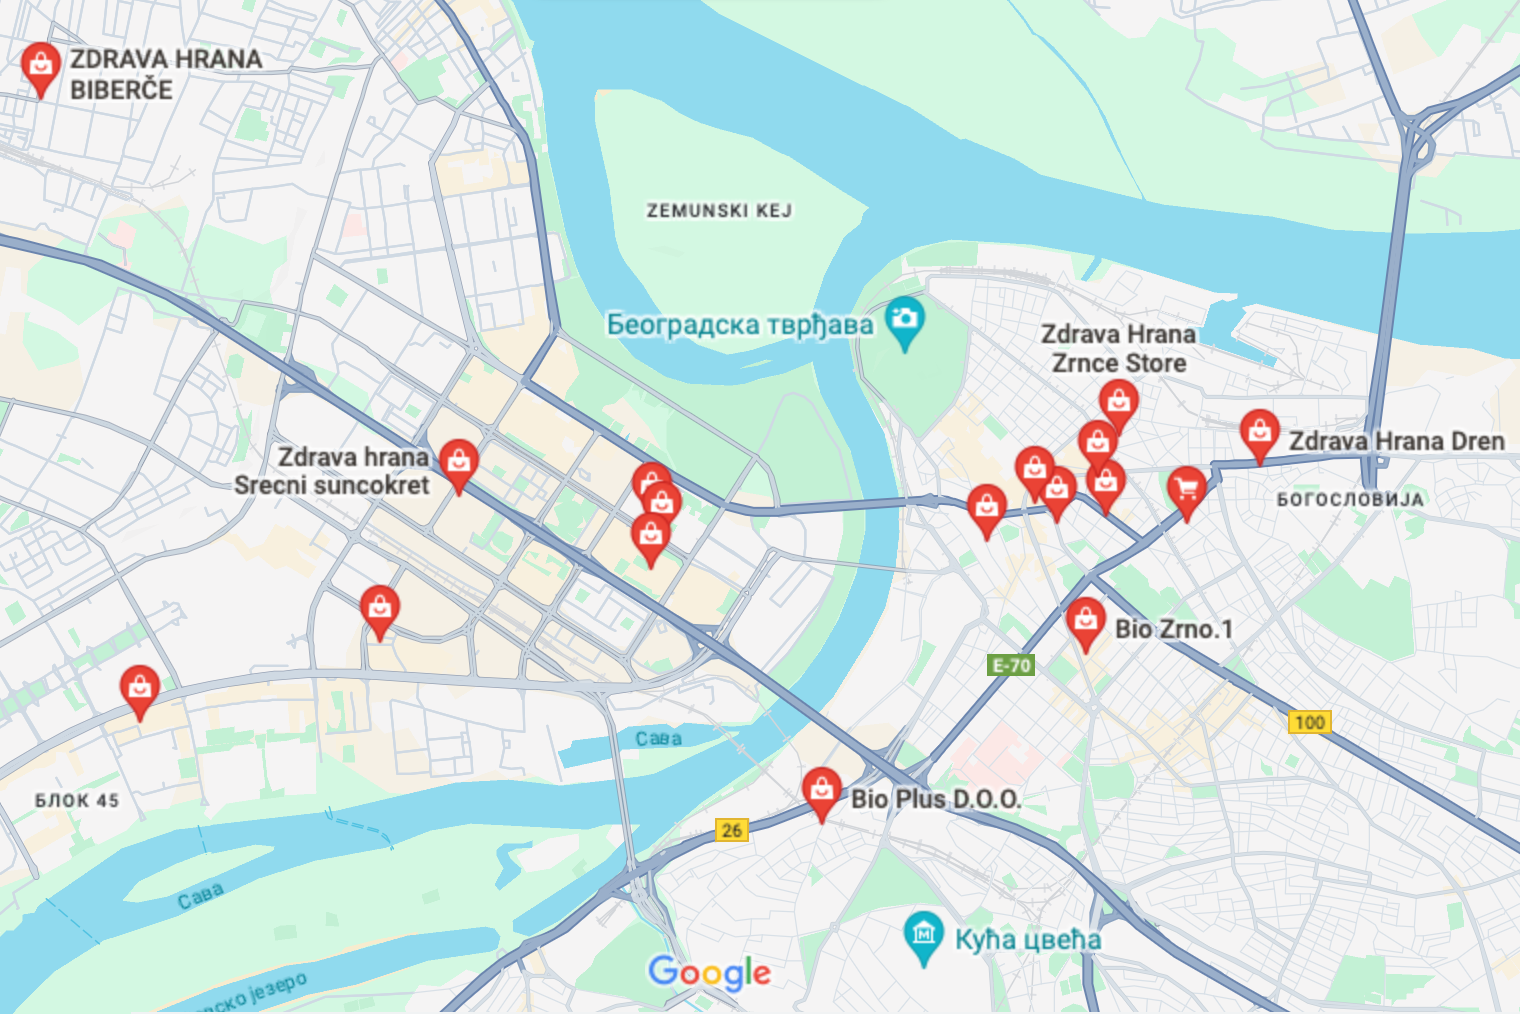 Магазины Zdrava Hrana есть в каждом районе Белграда